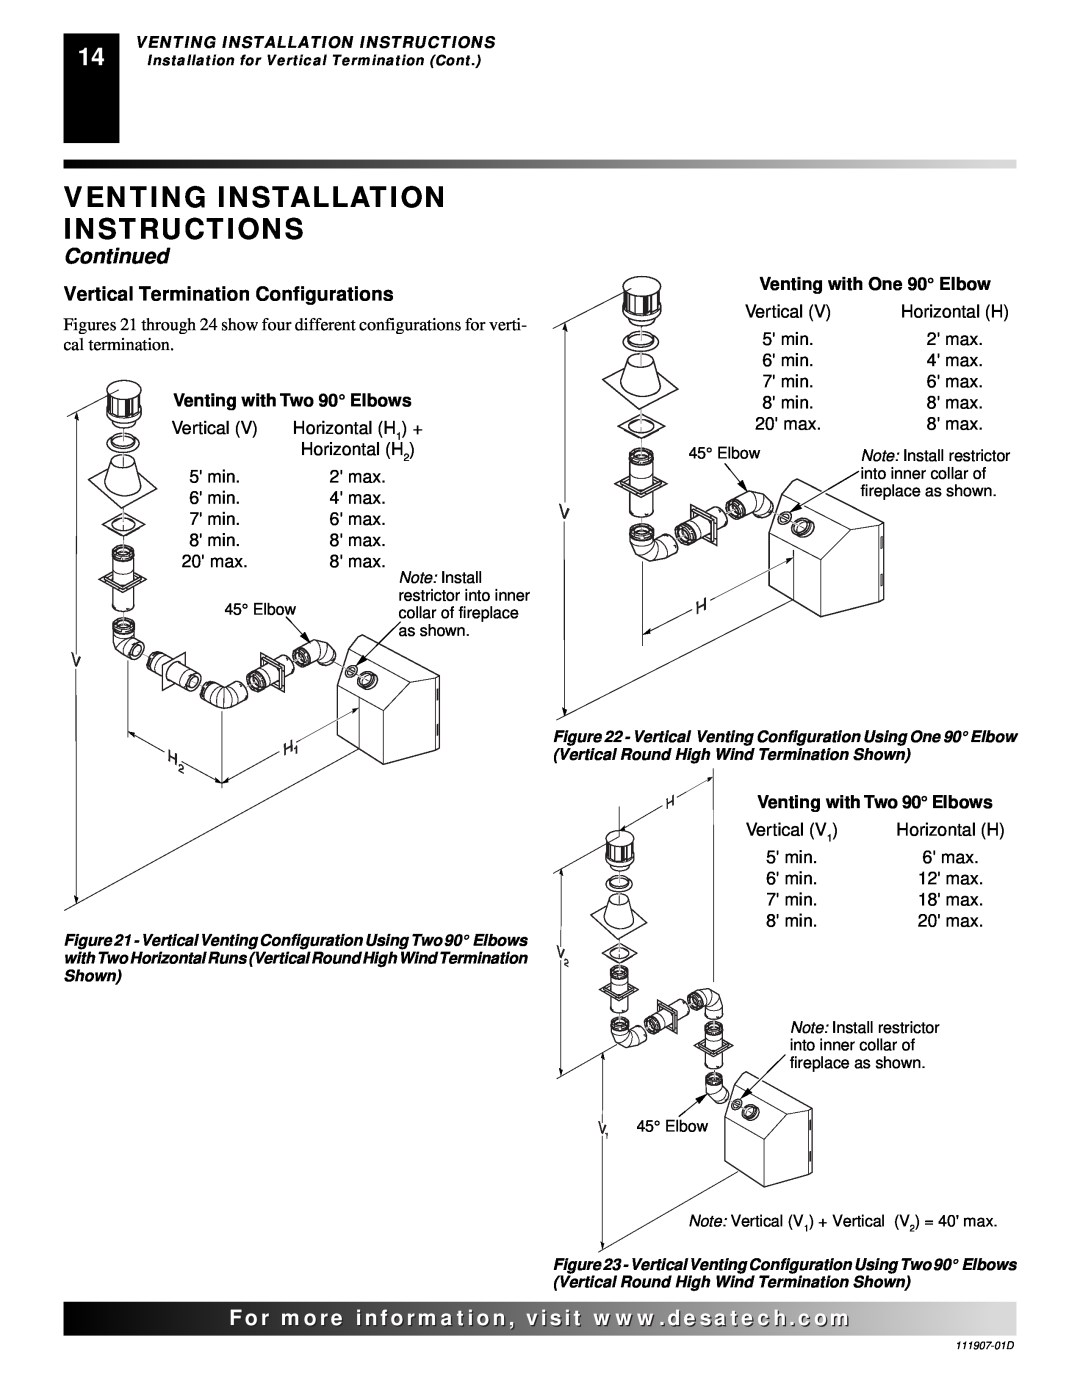 Desa V42EN-A, VV42ENB(1) Venting Installation Instructions, Continued, For..com, Vertical Termination Configurations 